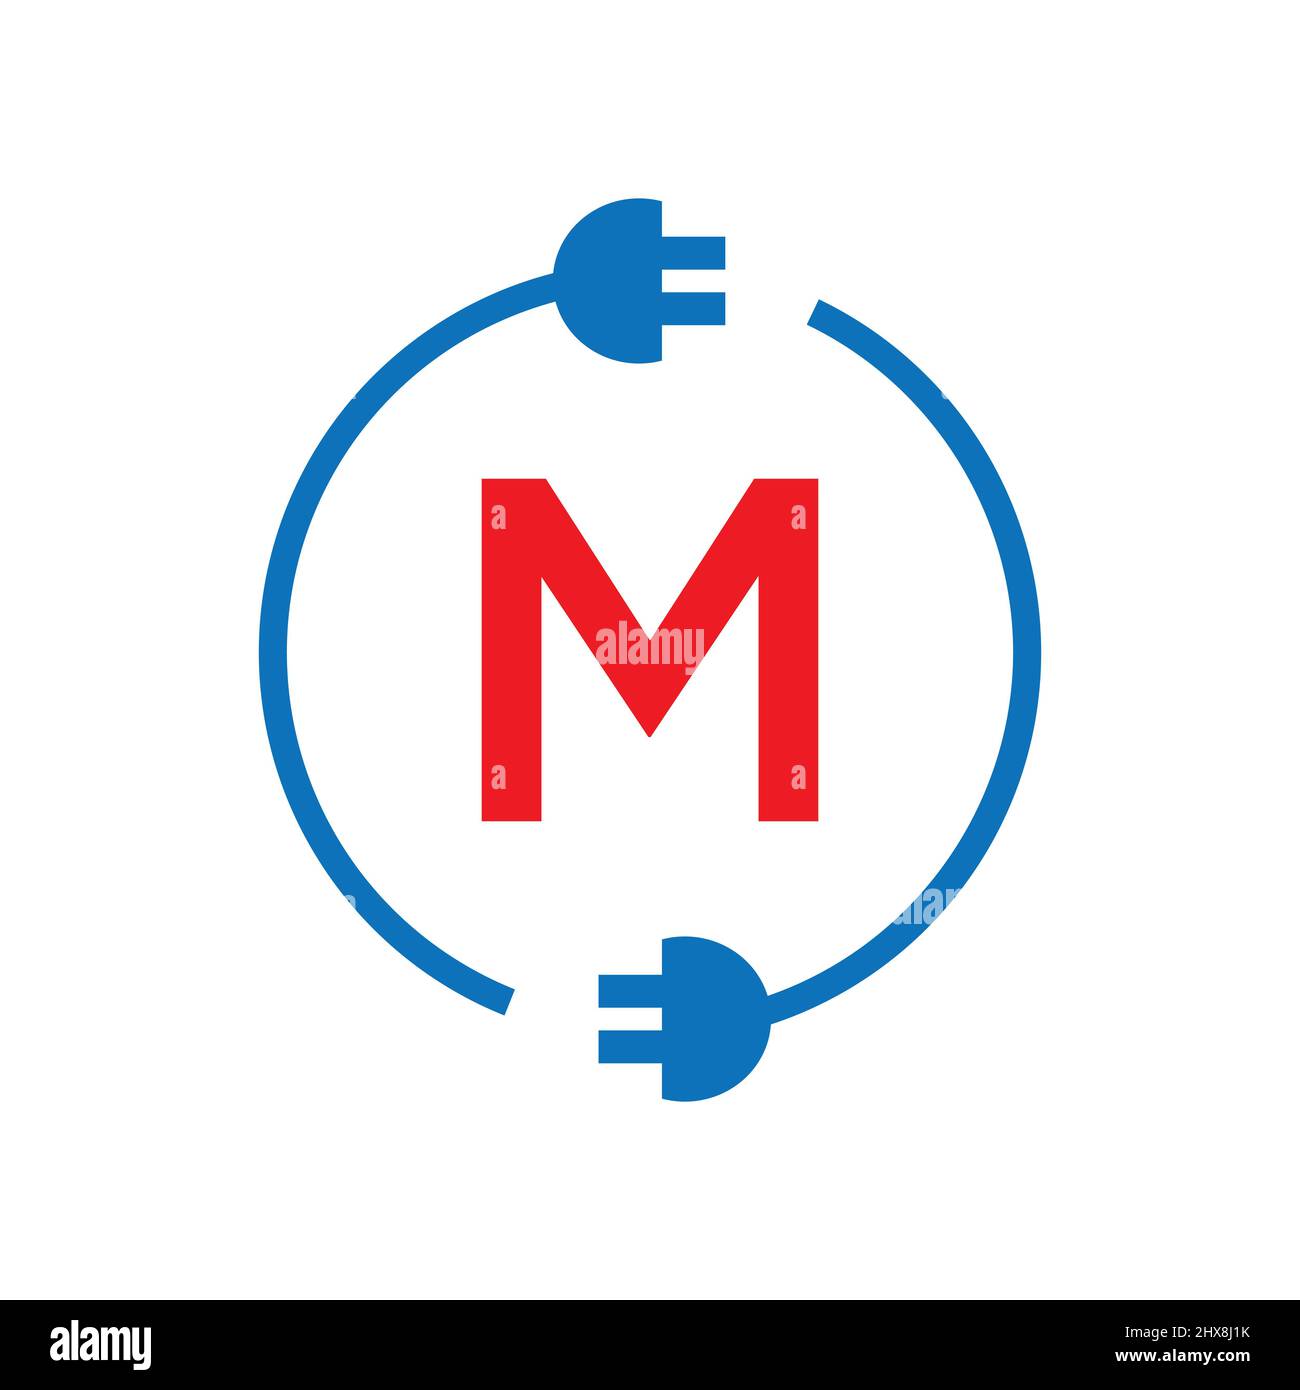 Lettre M de Thunder Bolt logo électricité. Electricité industrielle, Power Sign Electric Bolt on M lettre logo Power Energy, Lightning, Electricité Sign Illustration de Vecteur